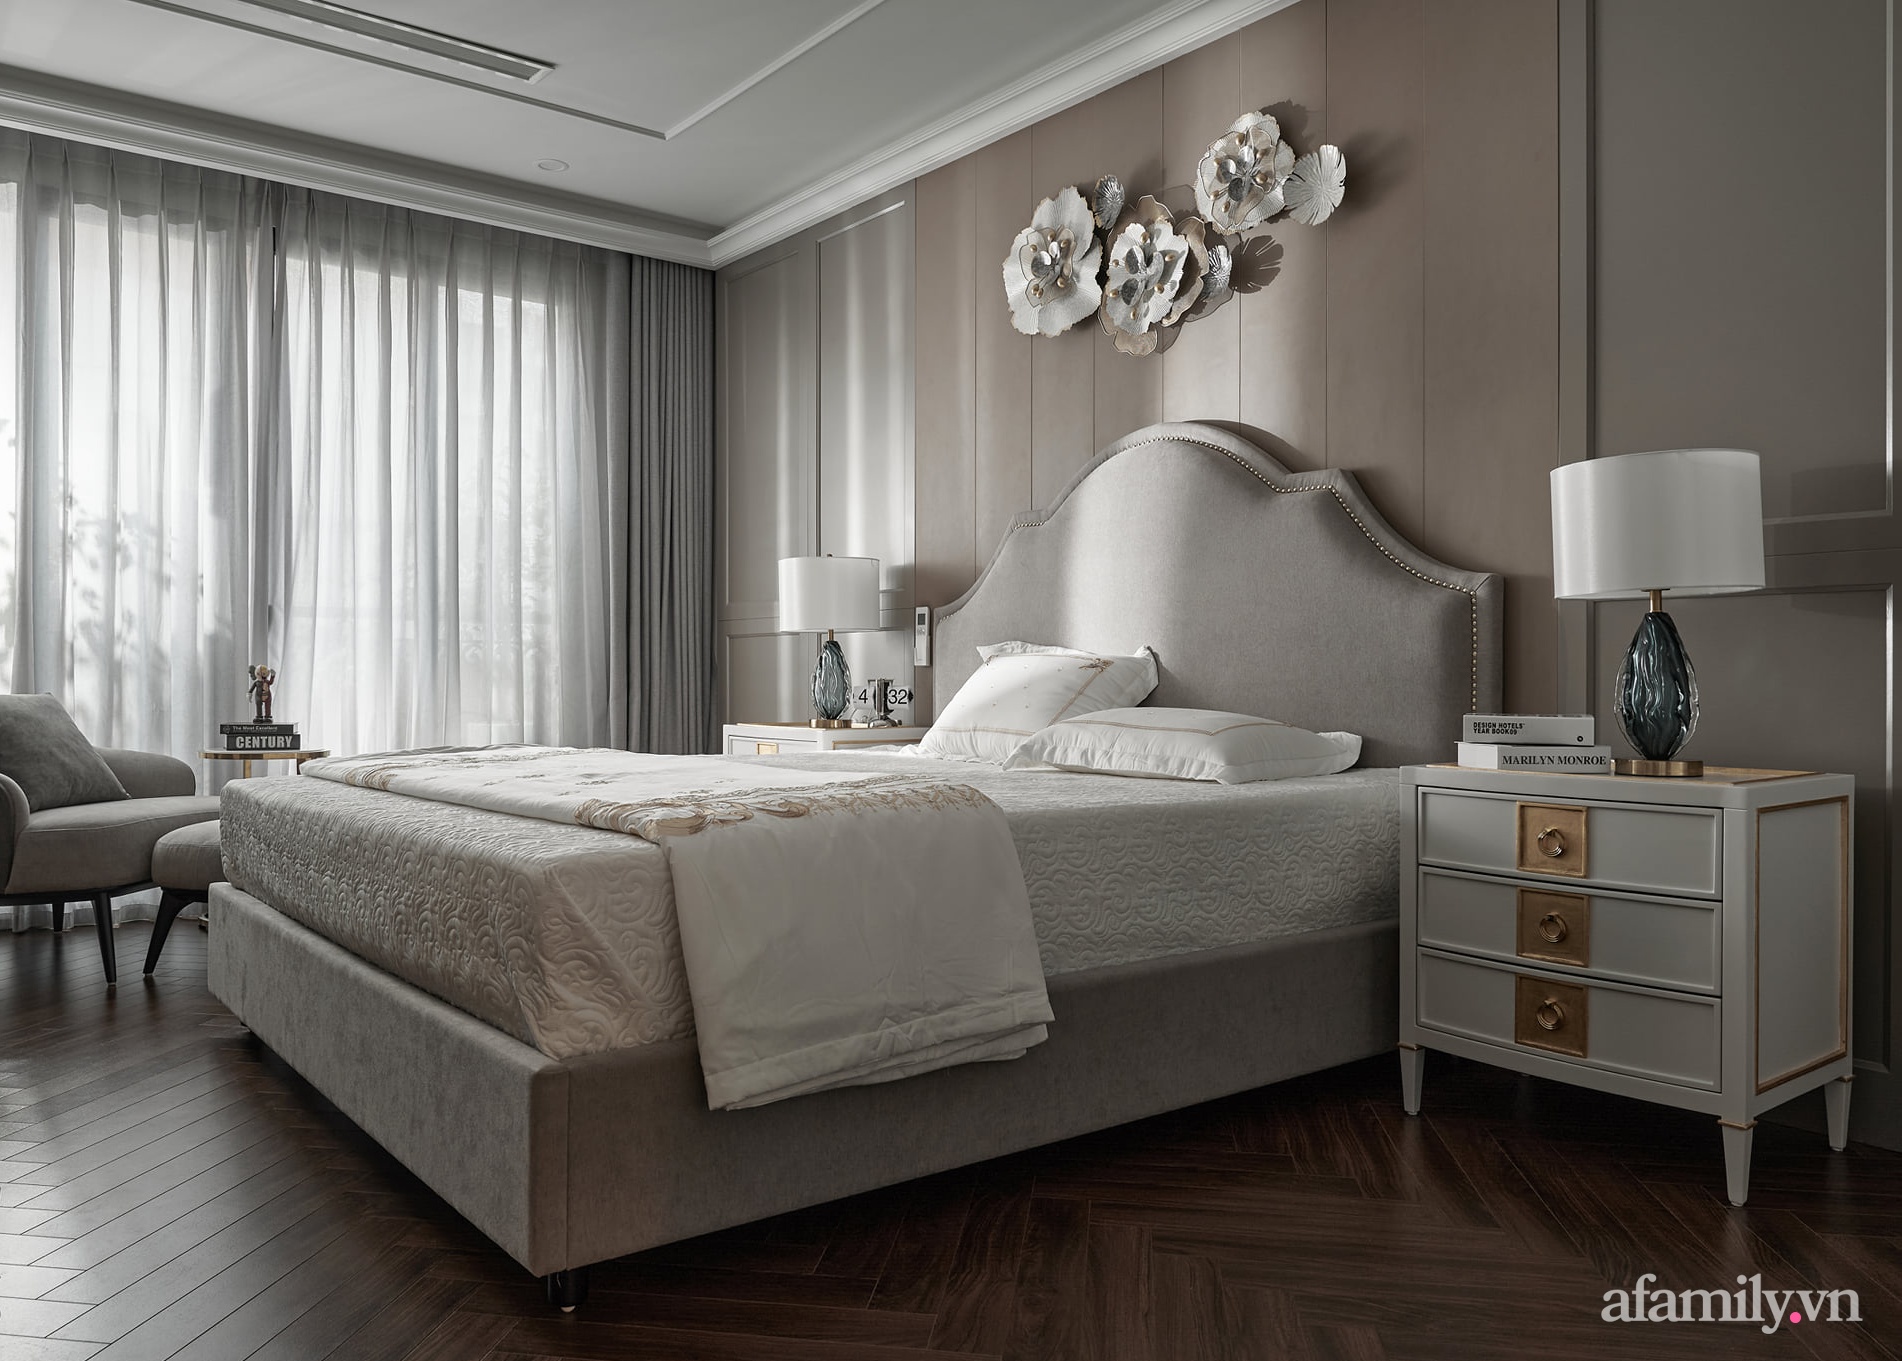  Căn phòng ngủ thứ 2 với vẻ đẹp của đường nét bán cổ điển khi thiết kế phần đầu giường kết hợp với đồ trang trí.